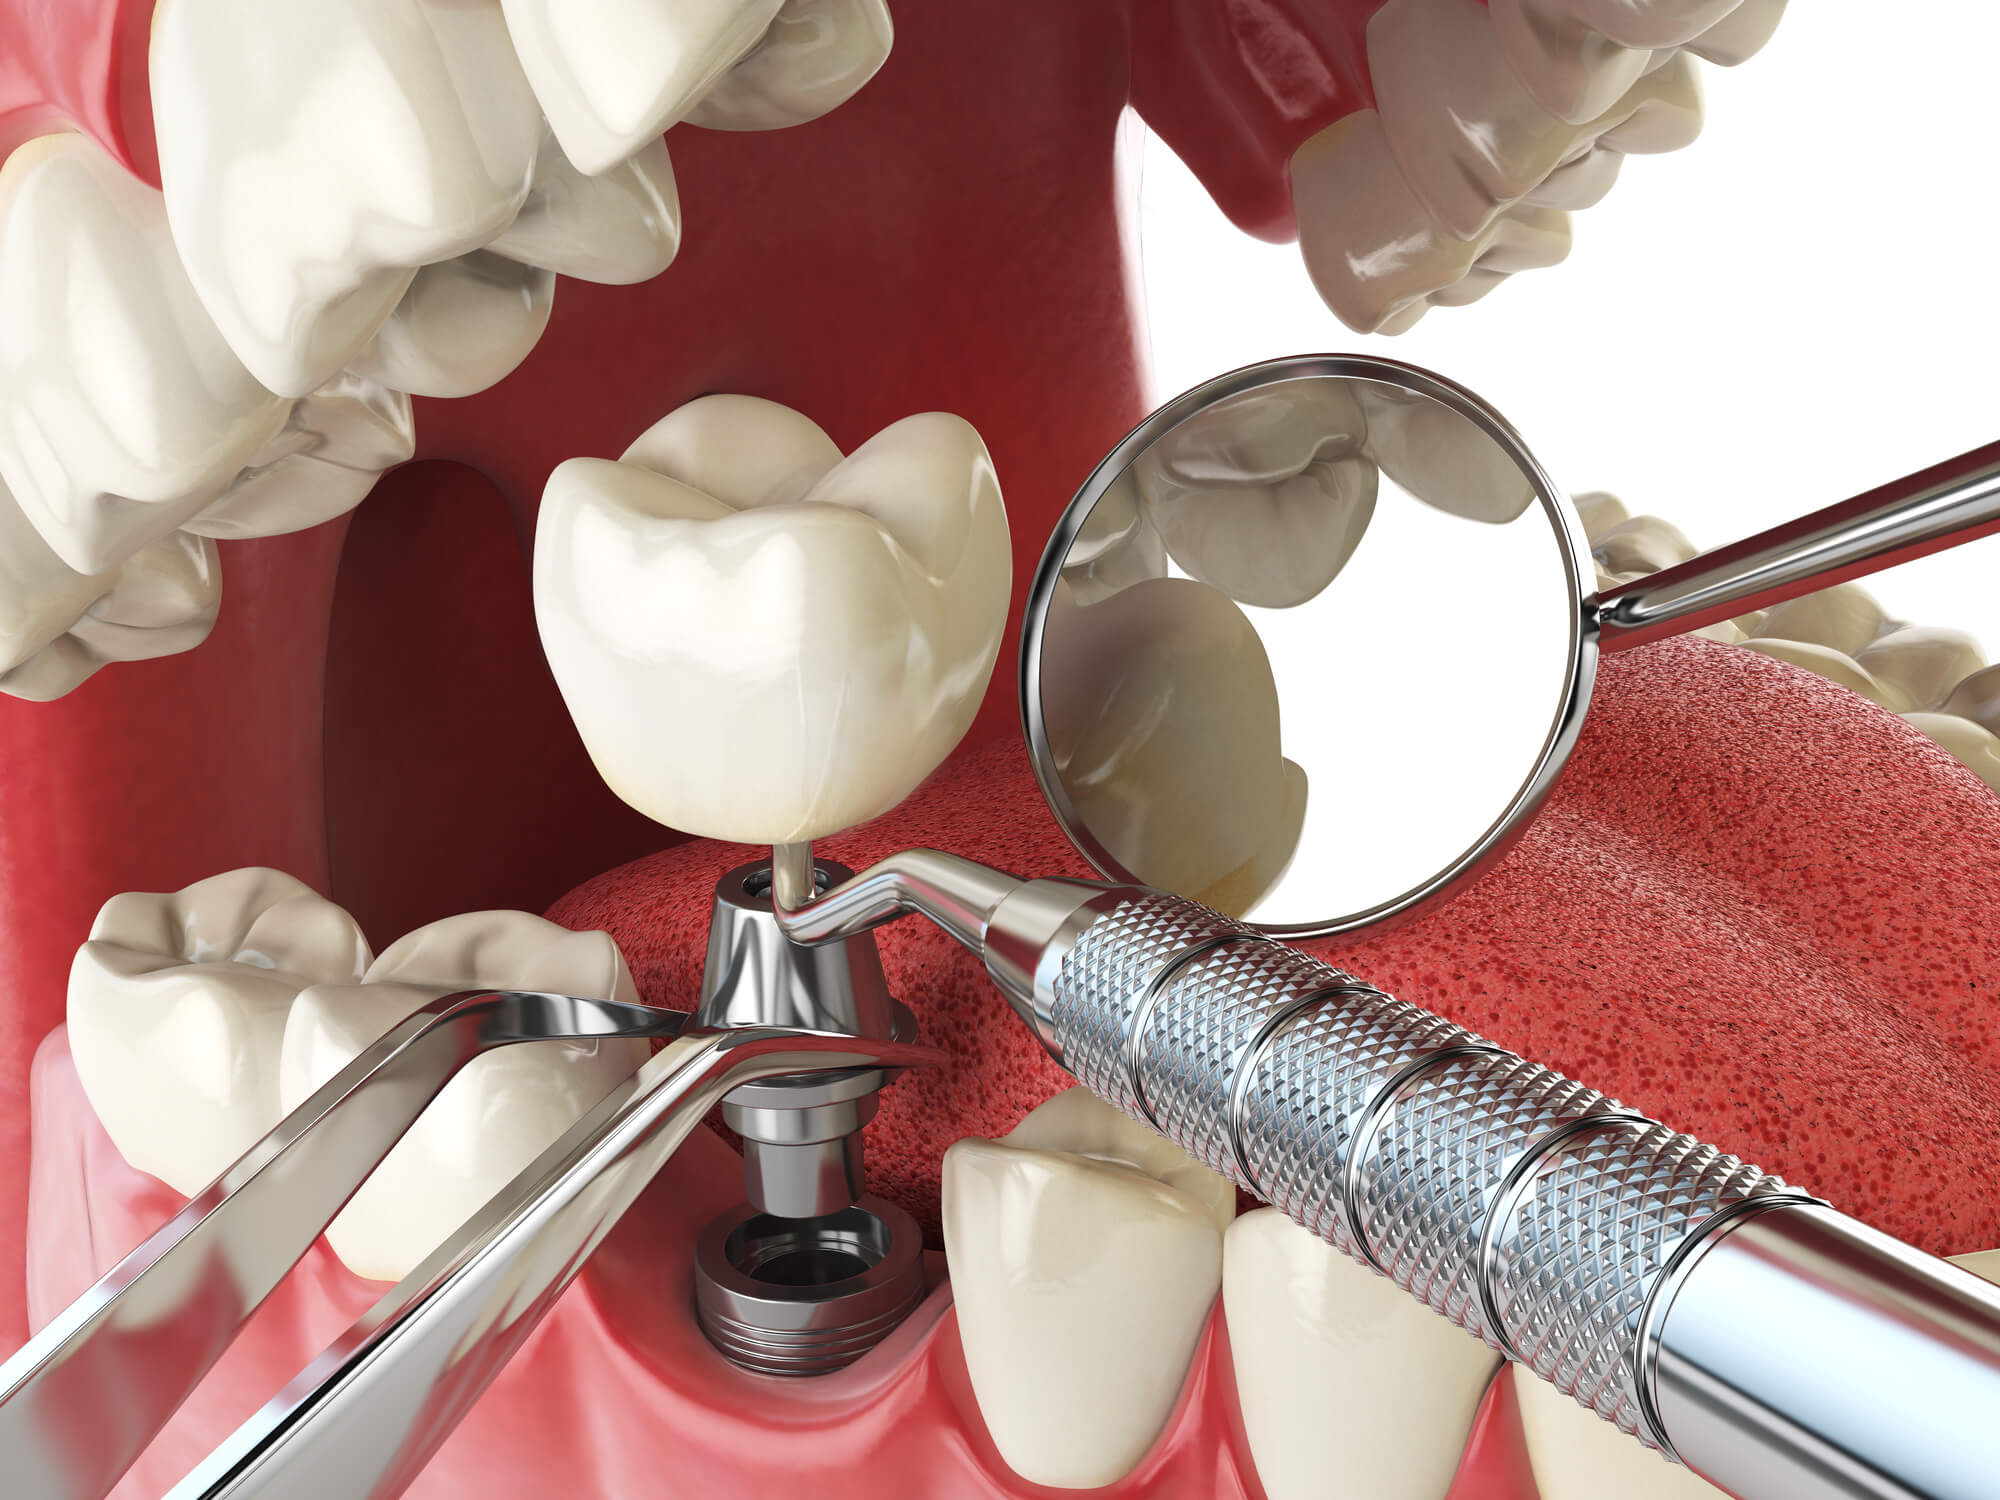 3d image of dental implants